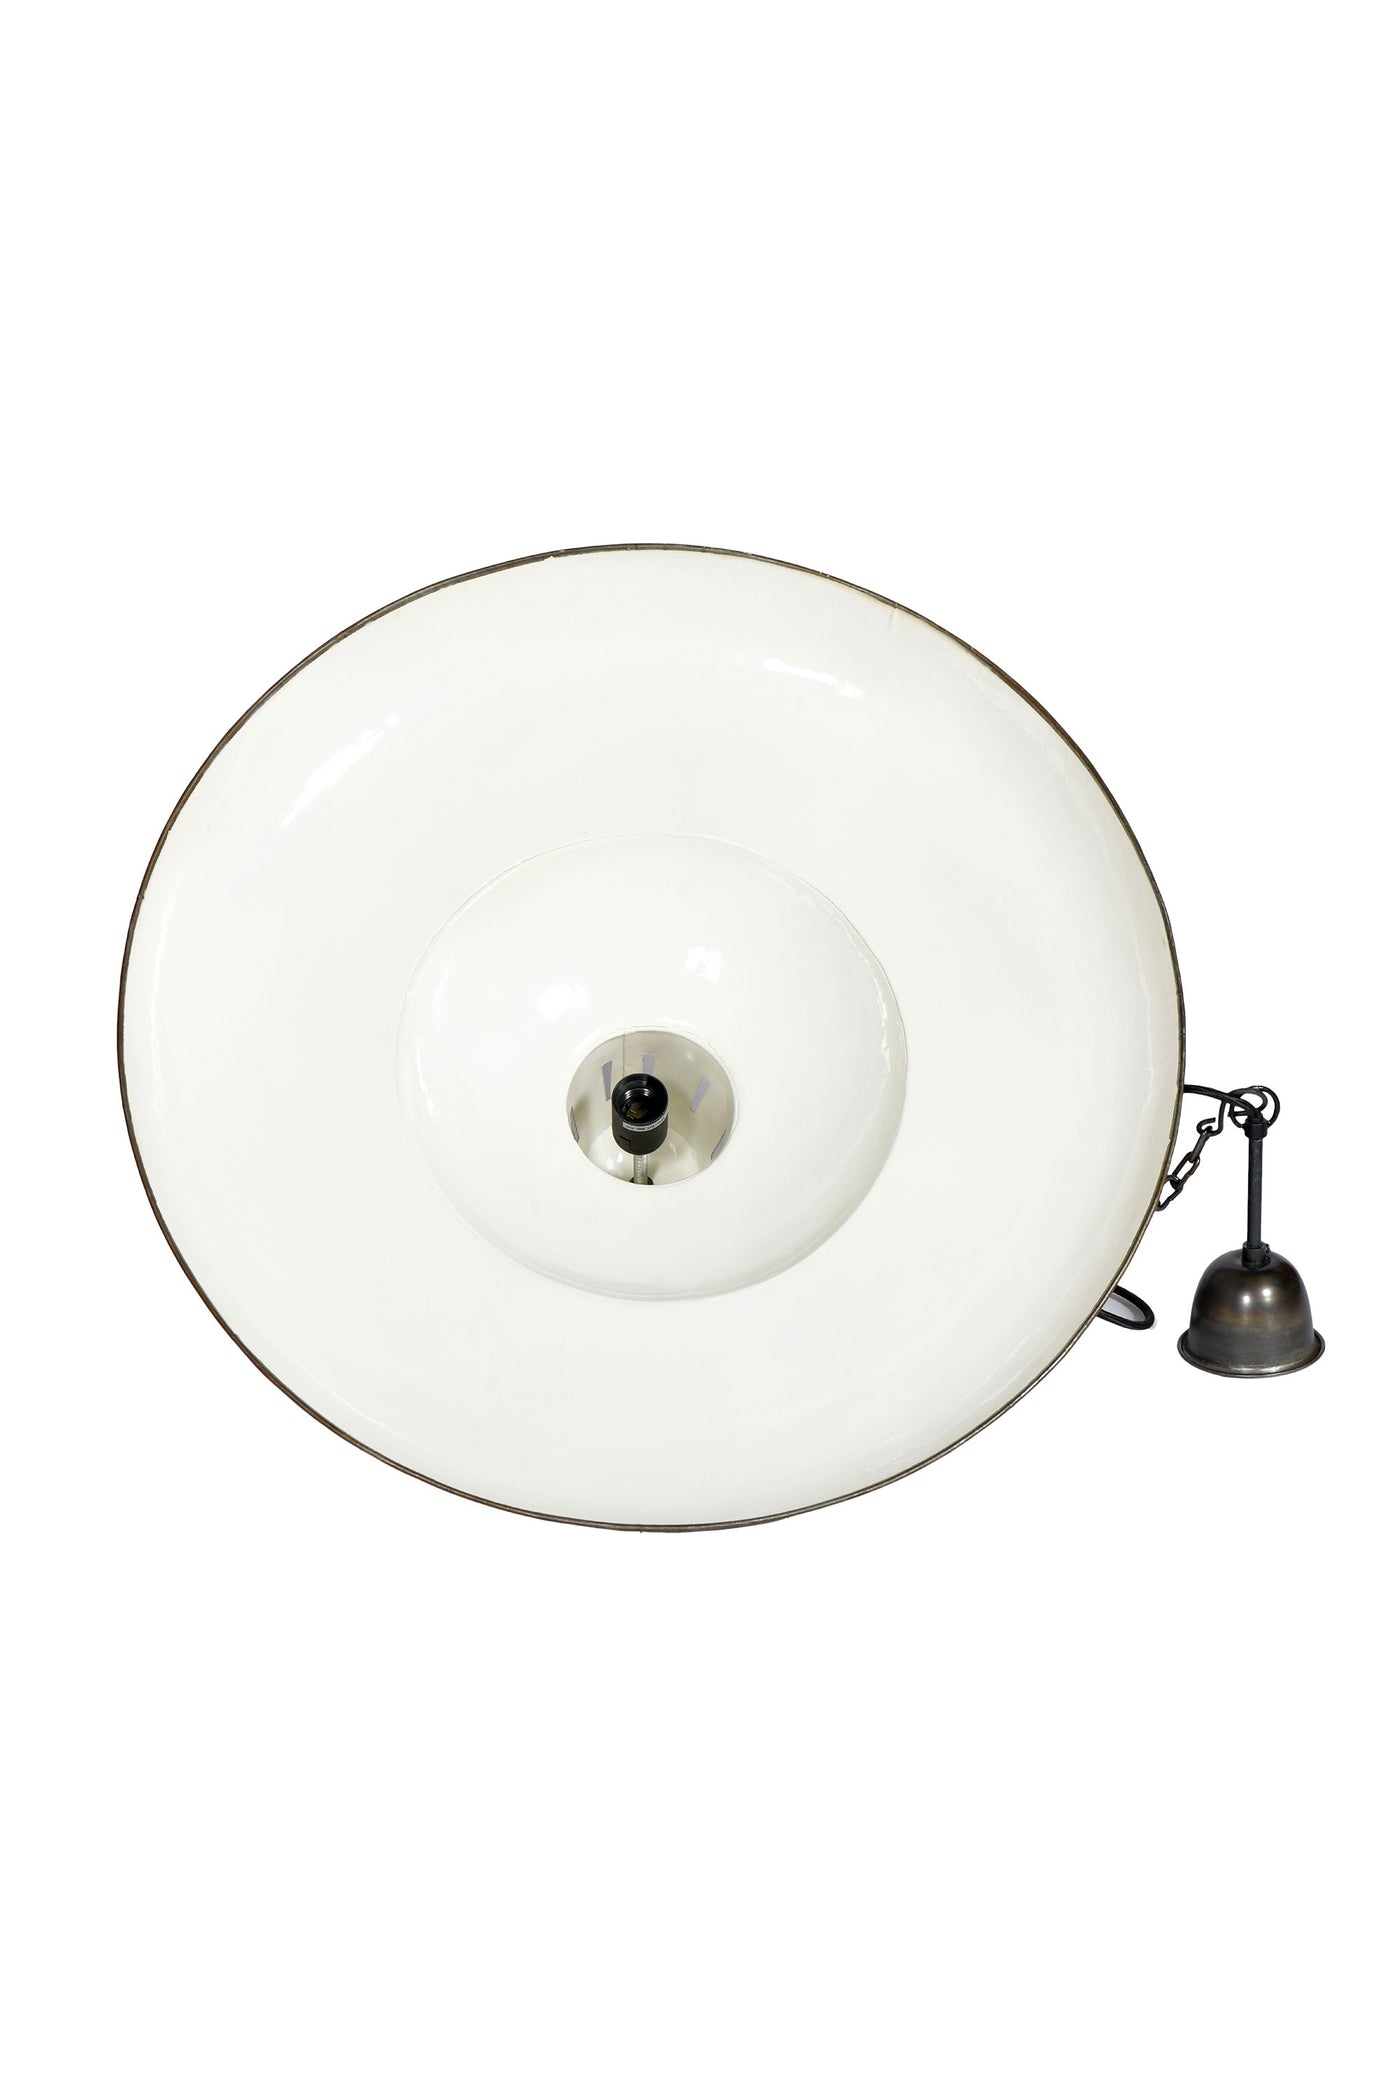 Zetland Large - Old White - Enamelled Iron Dish Pendant Light - House of Isabella AU